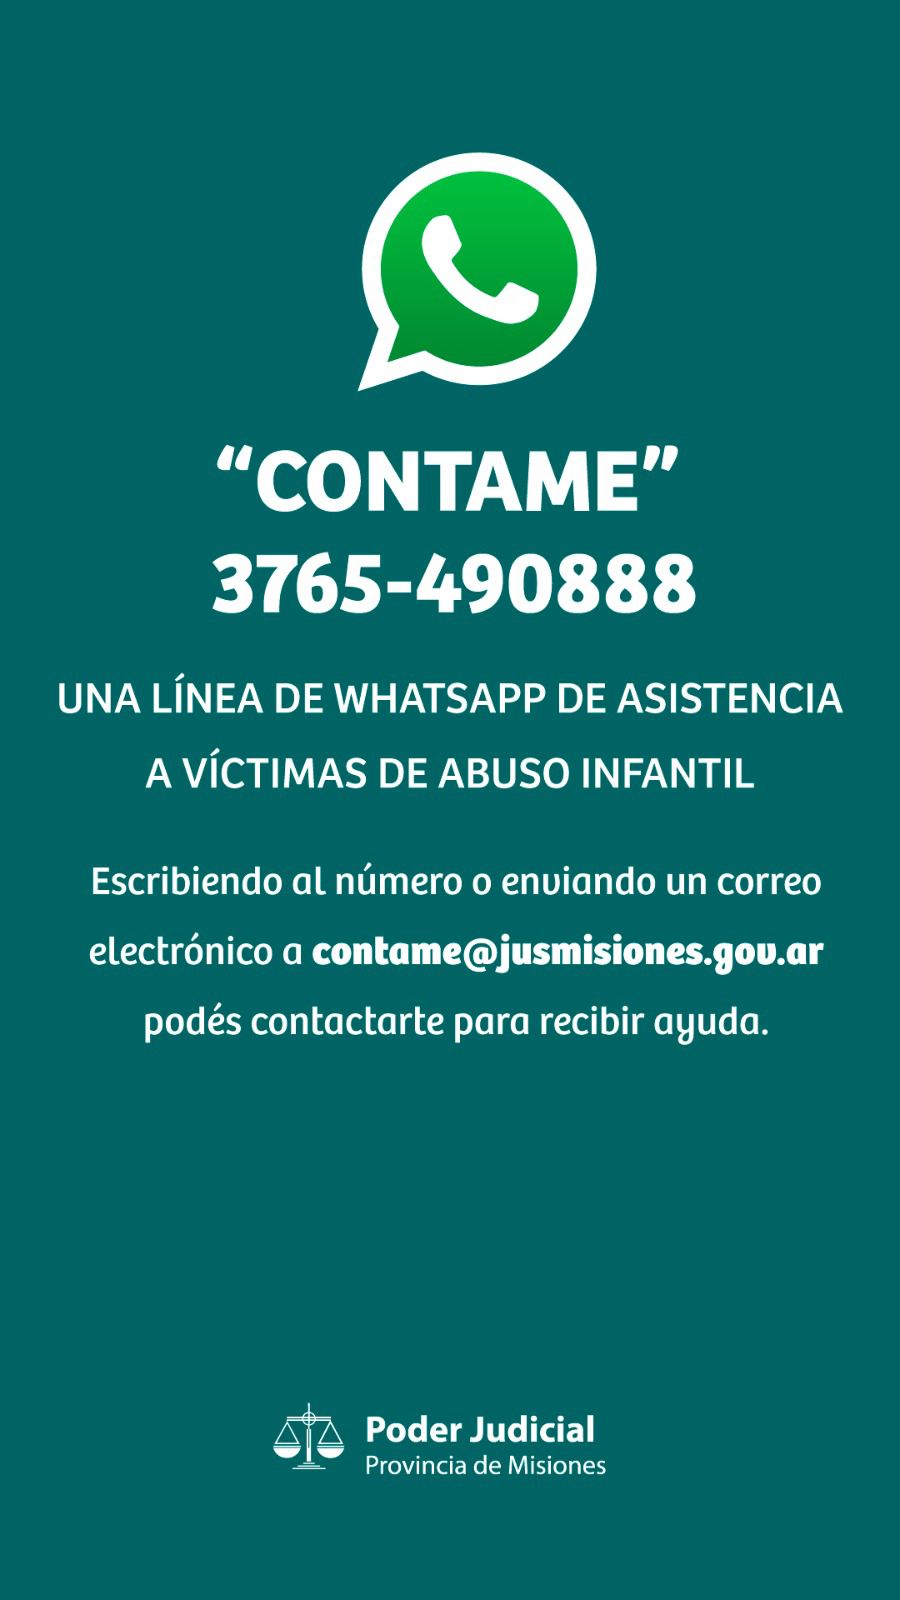 “Contame”, una línea de Whatsapp de asistencia a víctimas de abuso infantil en Misiones 